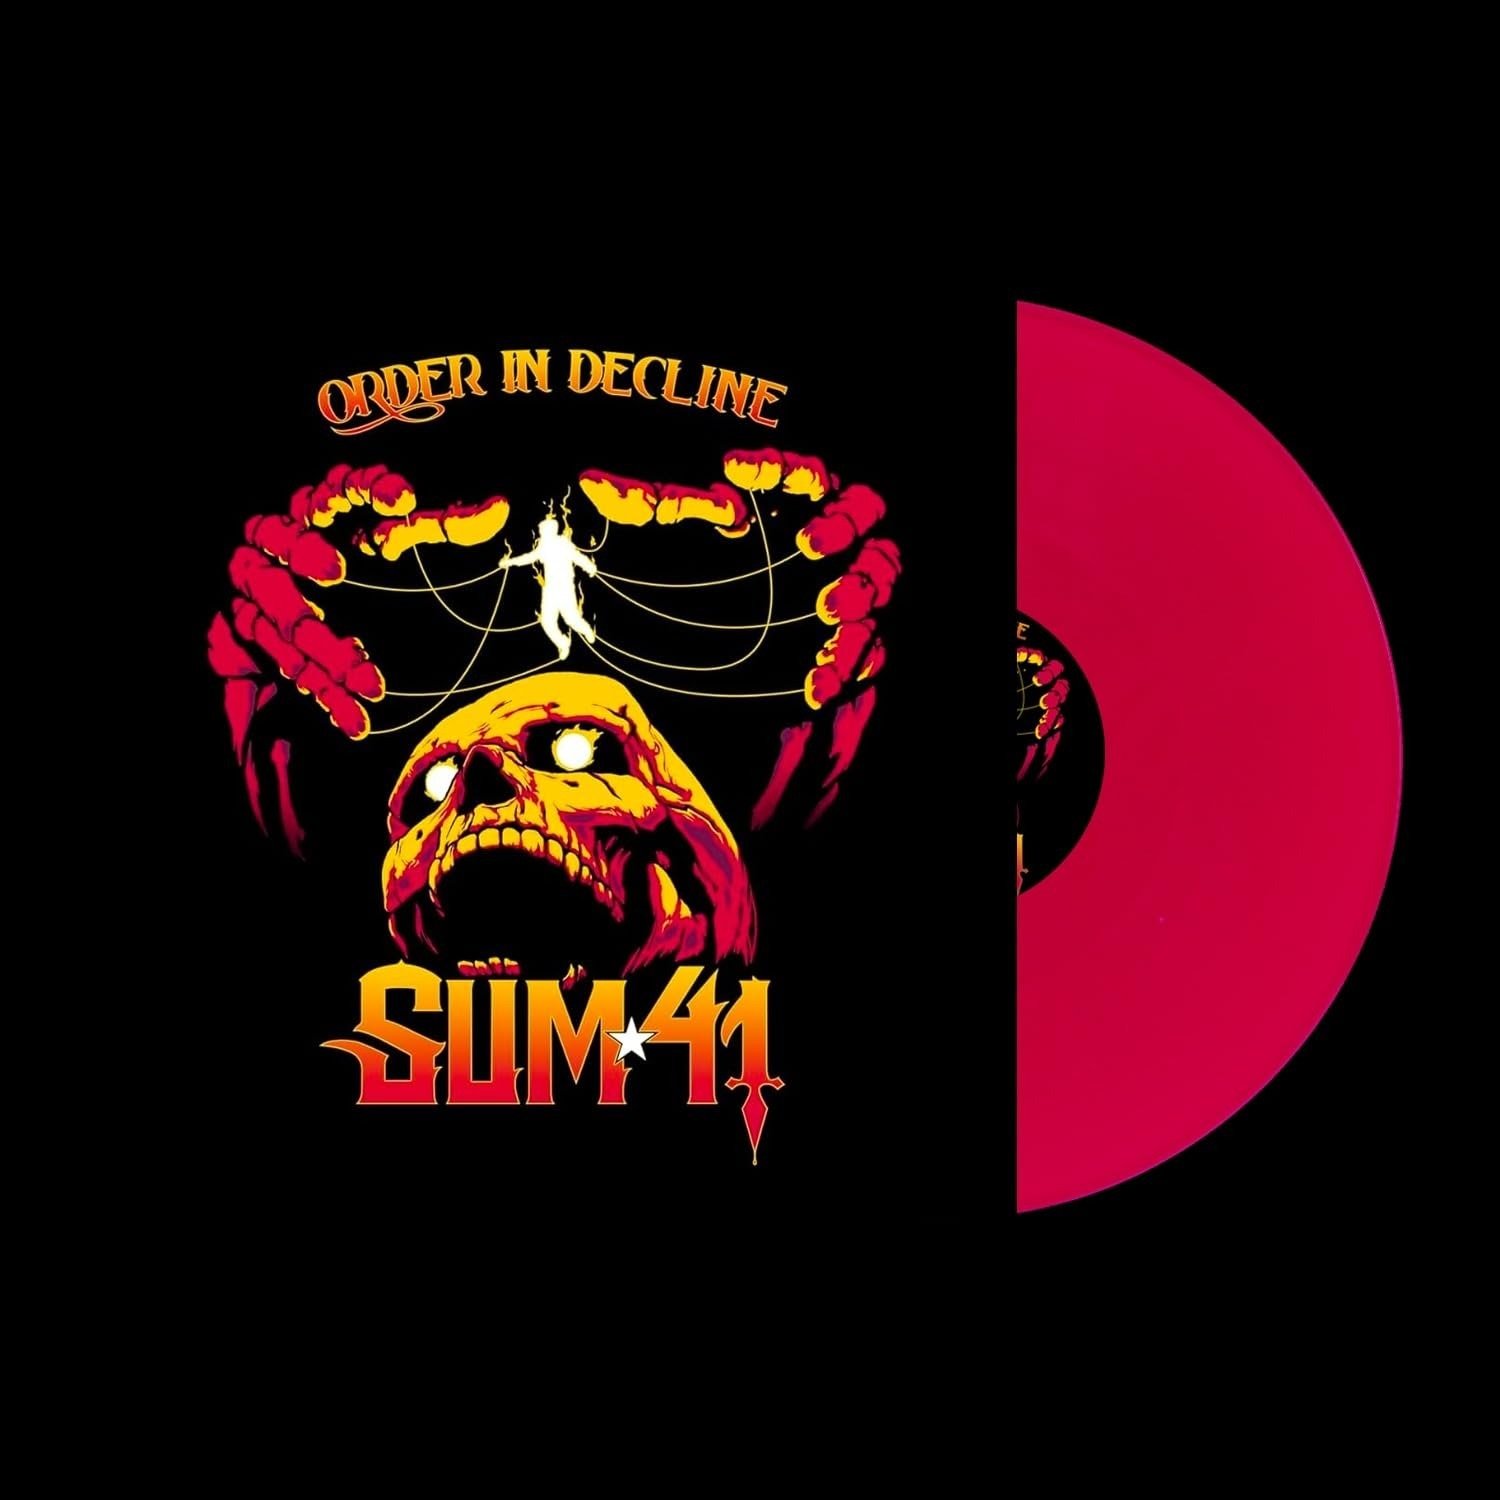 CD Shop - SUM 41 ORDER IN DECLINE